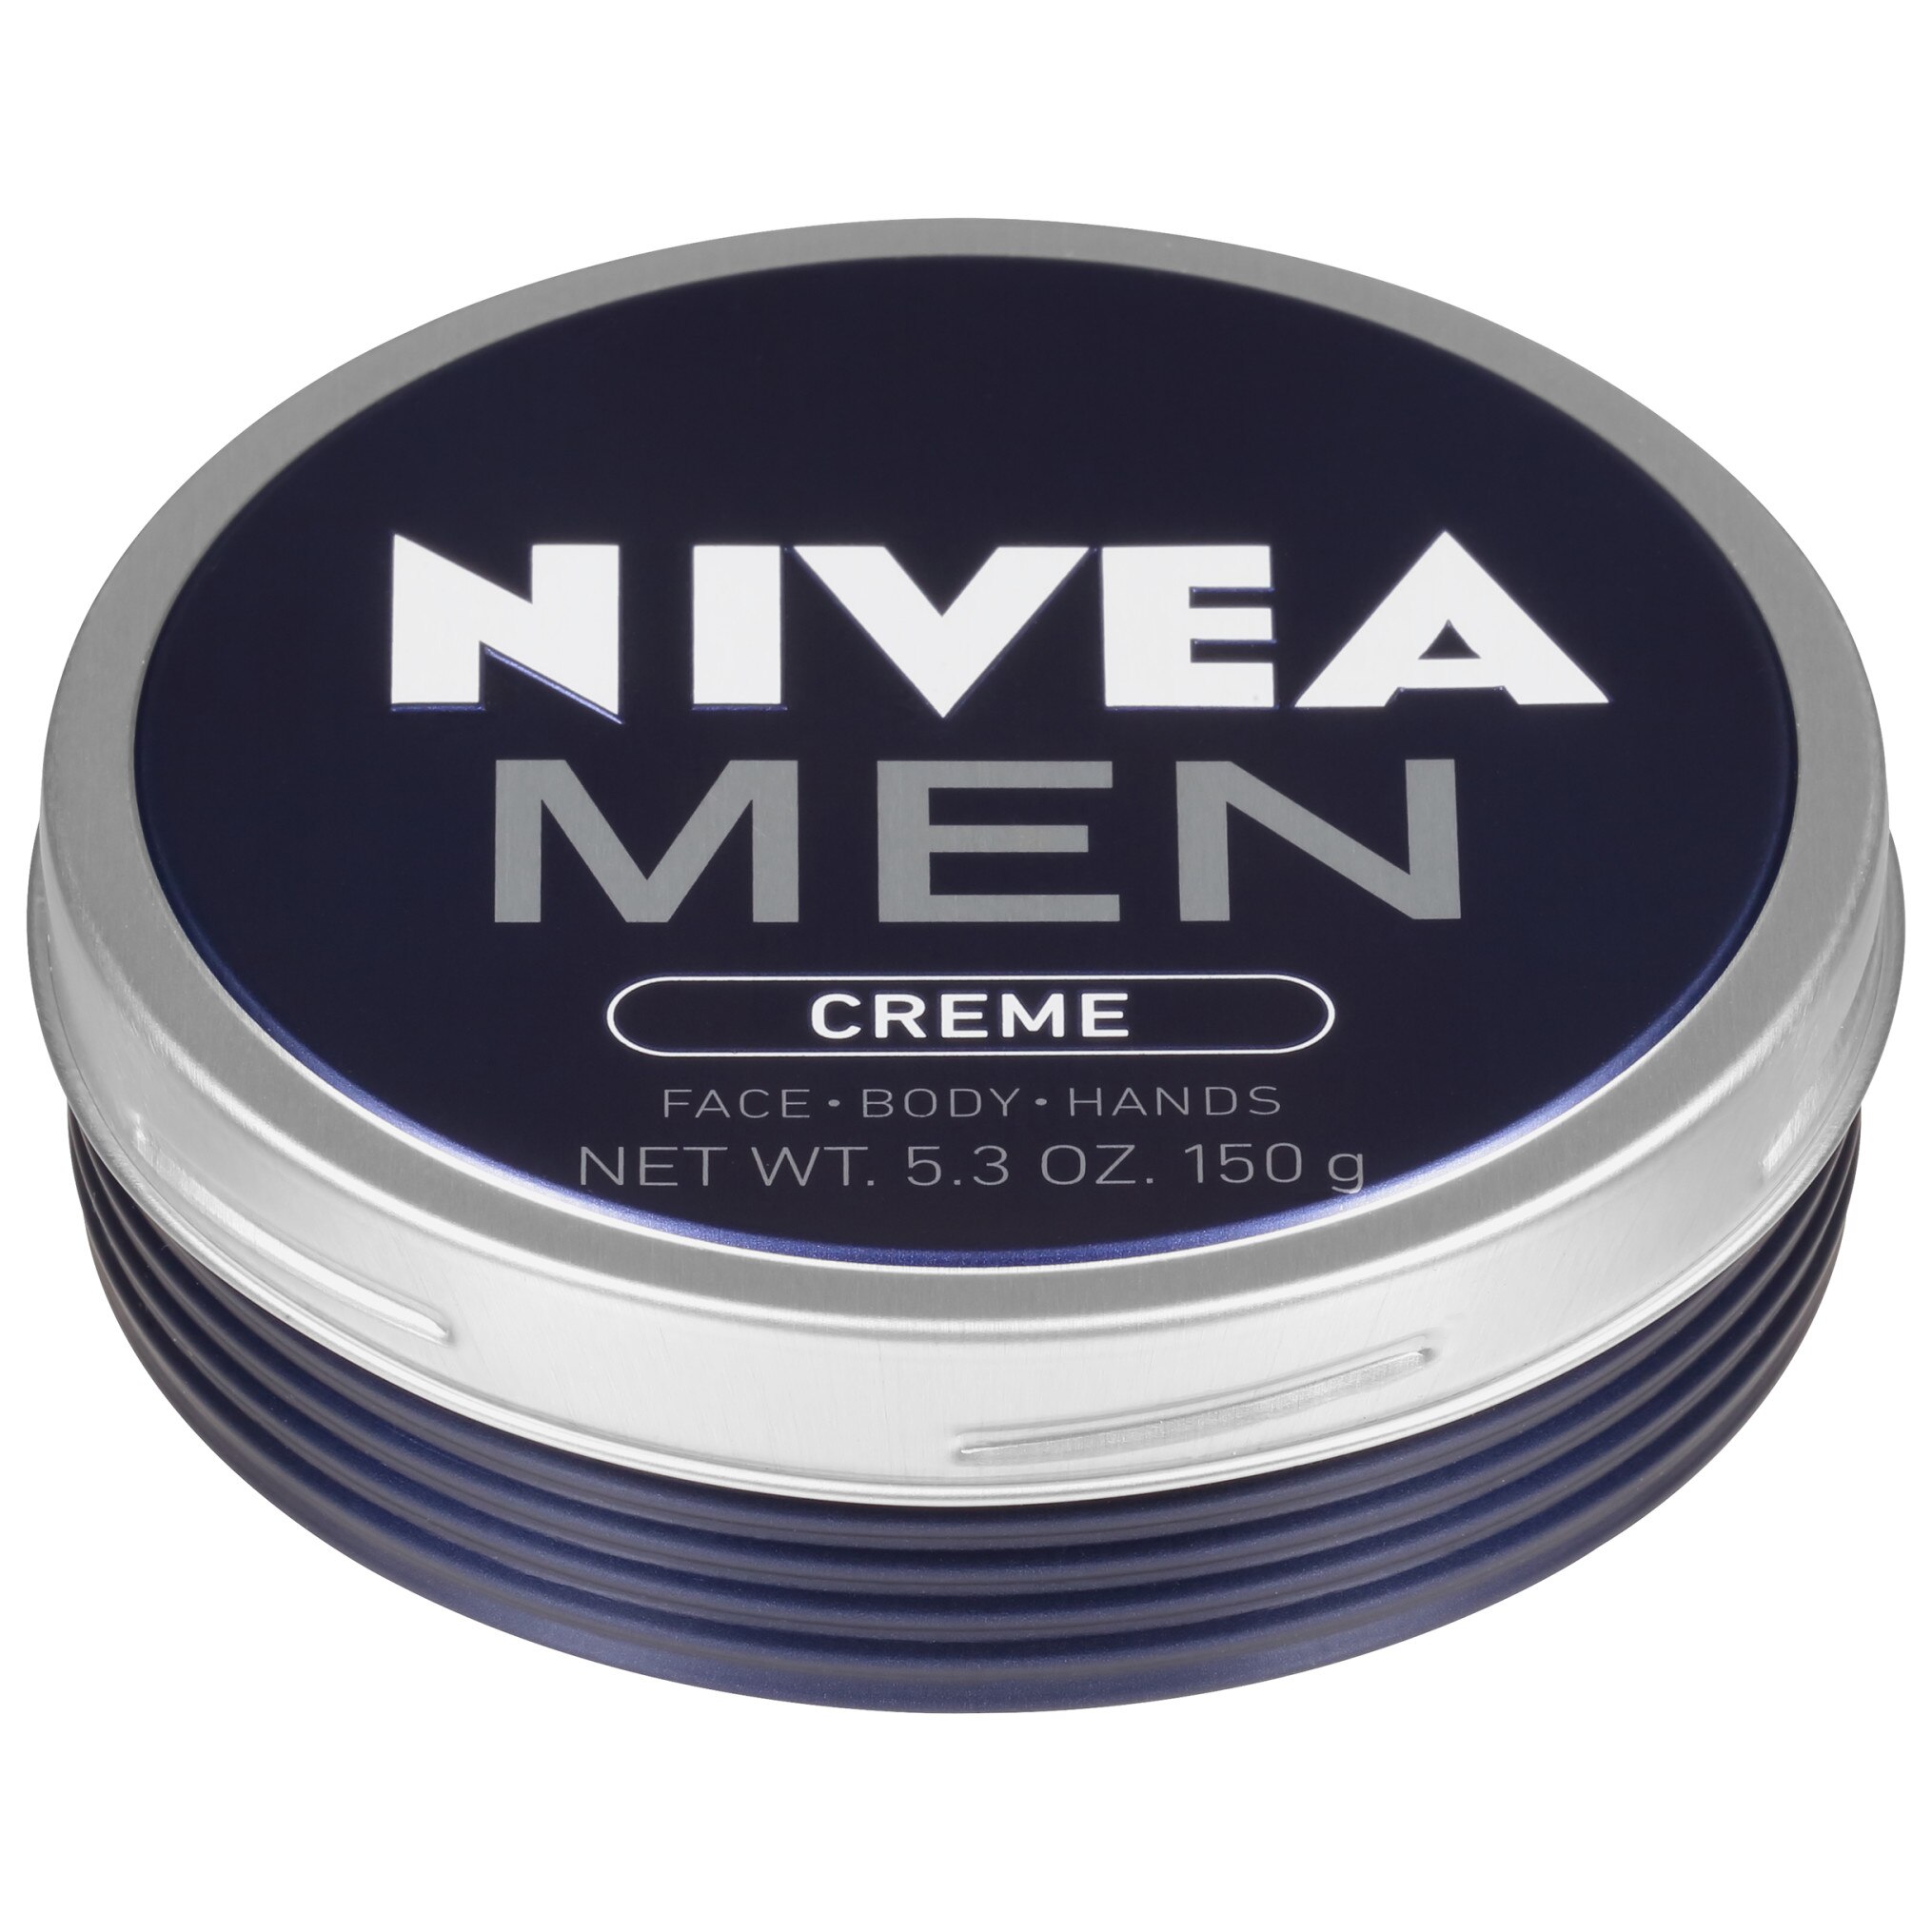 NIVEA MEN Creme, Face Hand and Body Cream, 5.3 OZ